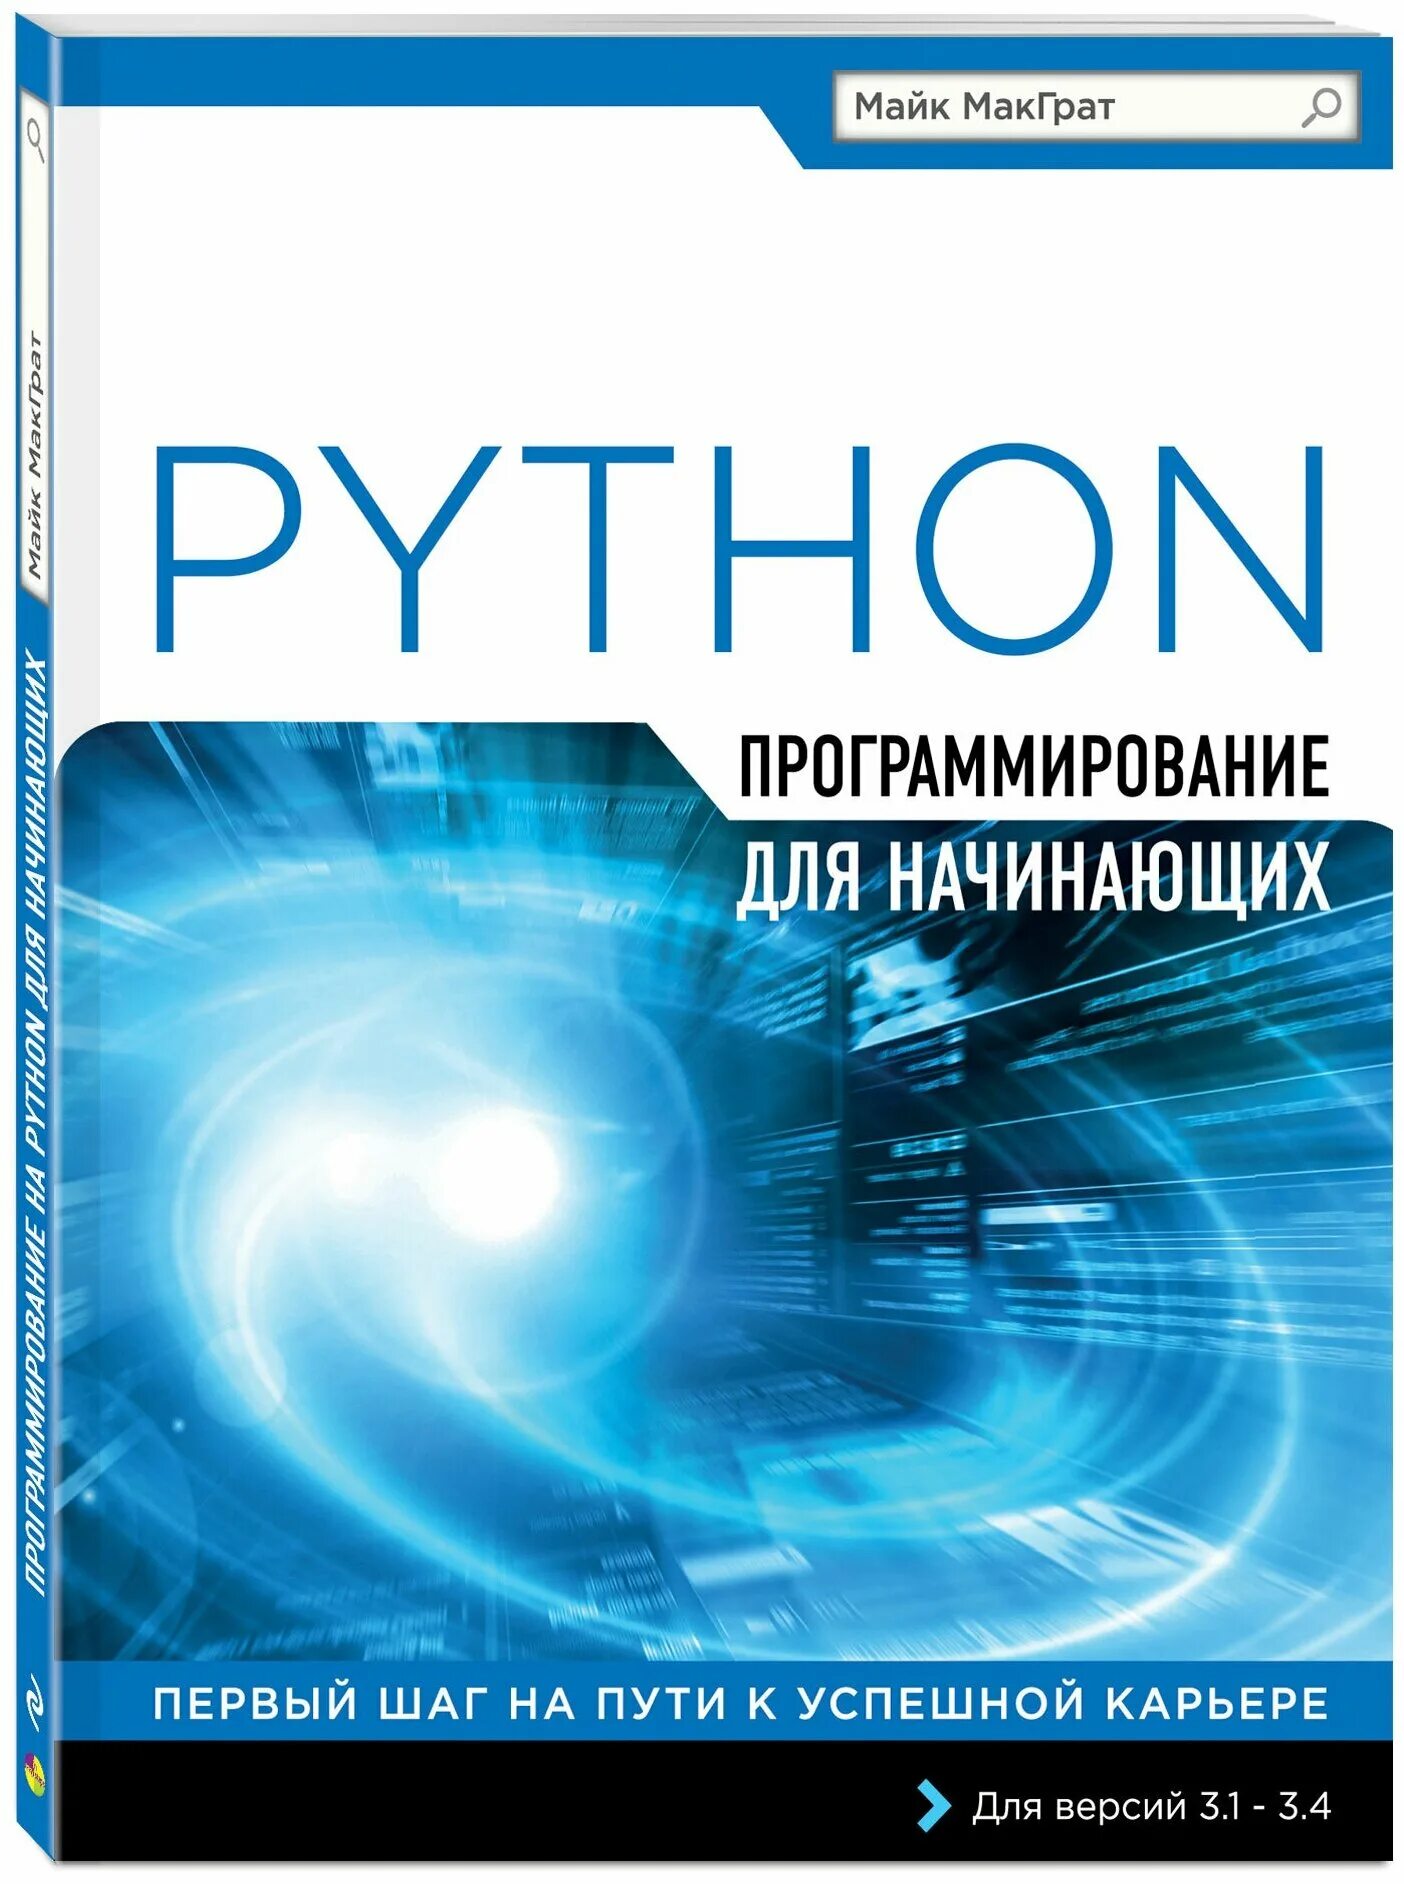 Книги по программироваги. Книги про программирование. Книжки по программированию. Программирование для начинающих. Python купить книгу